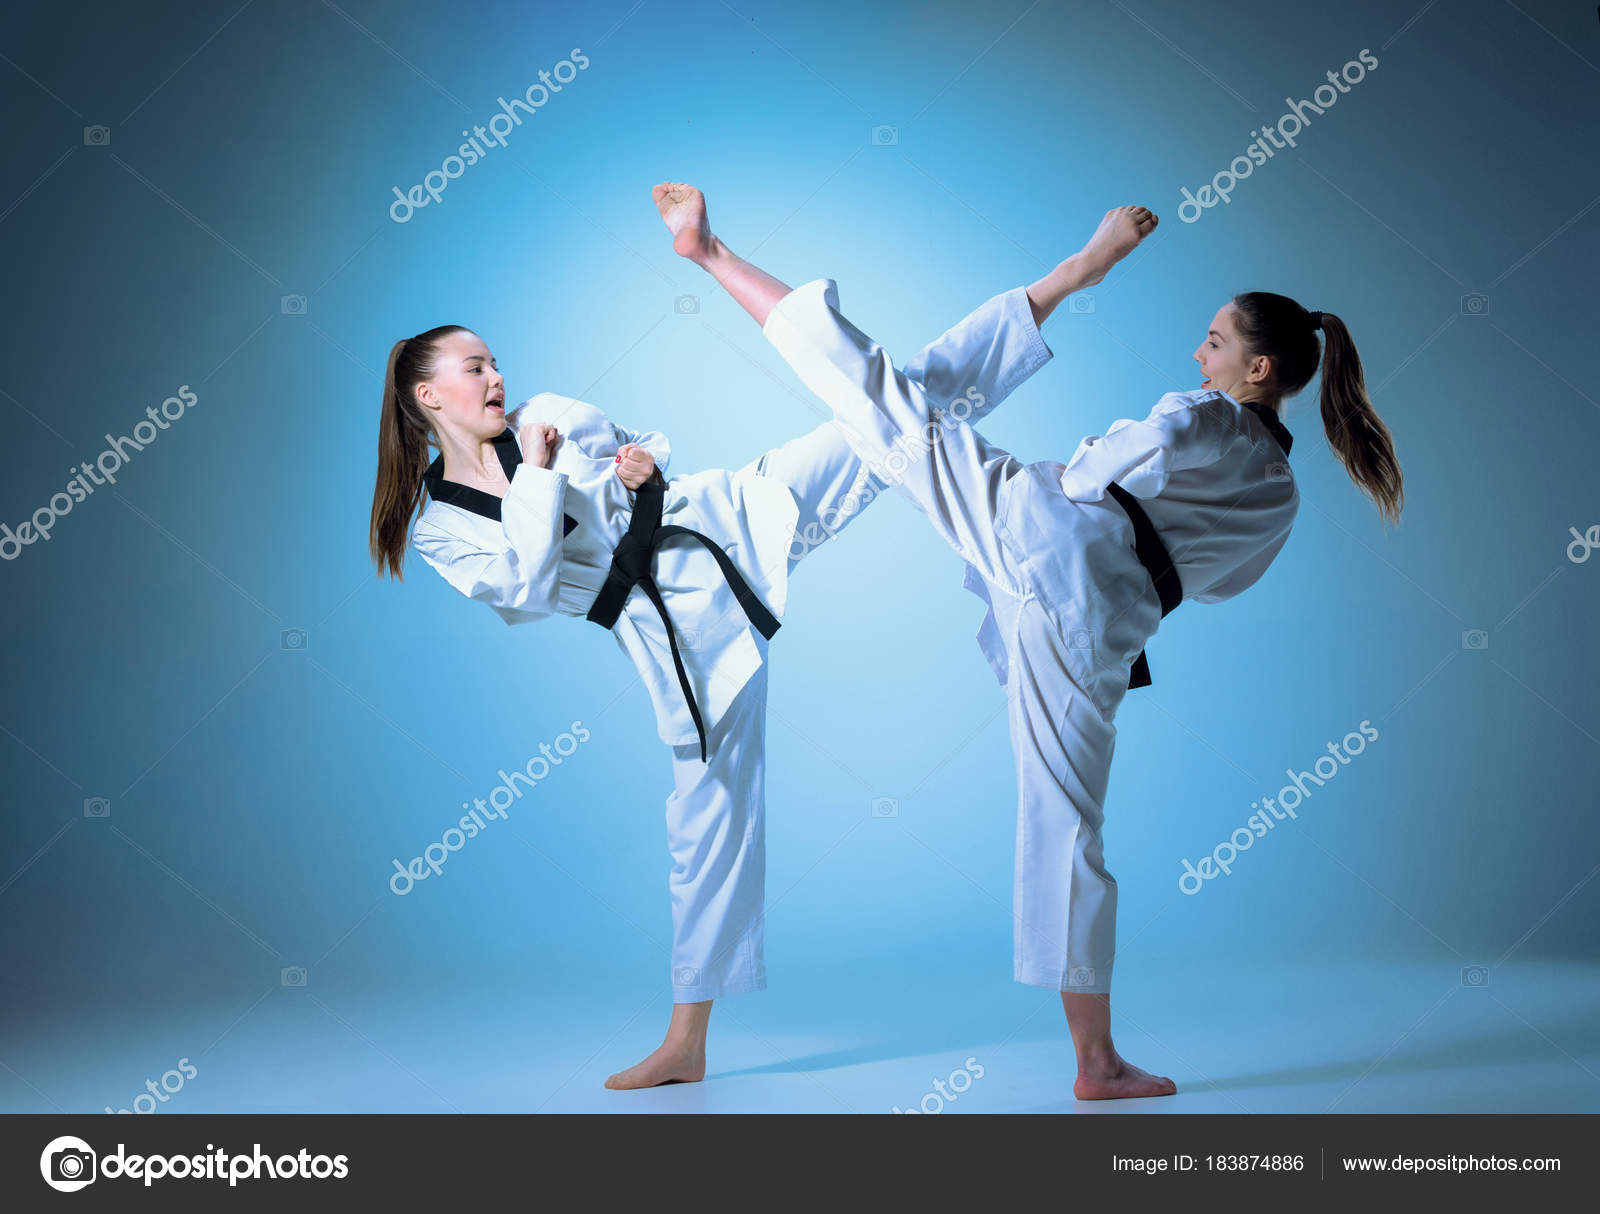 pierzi greutatea face taekwondo